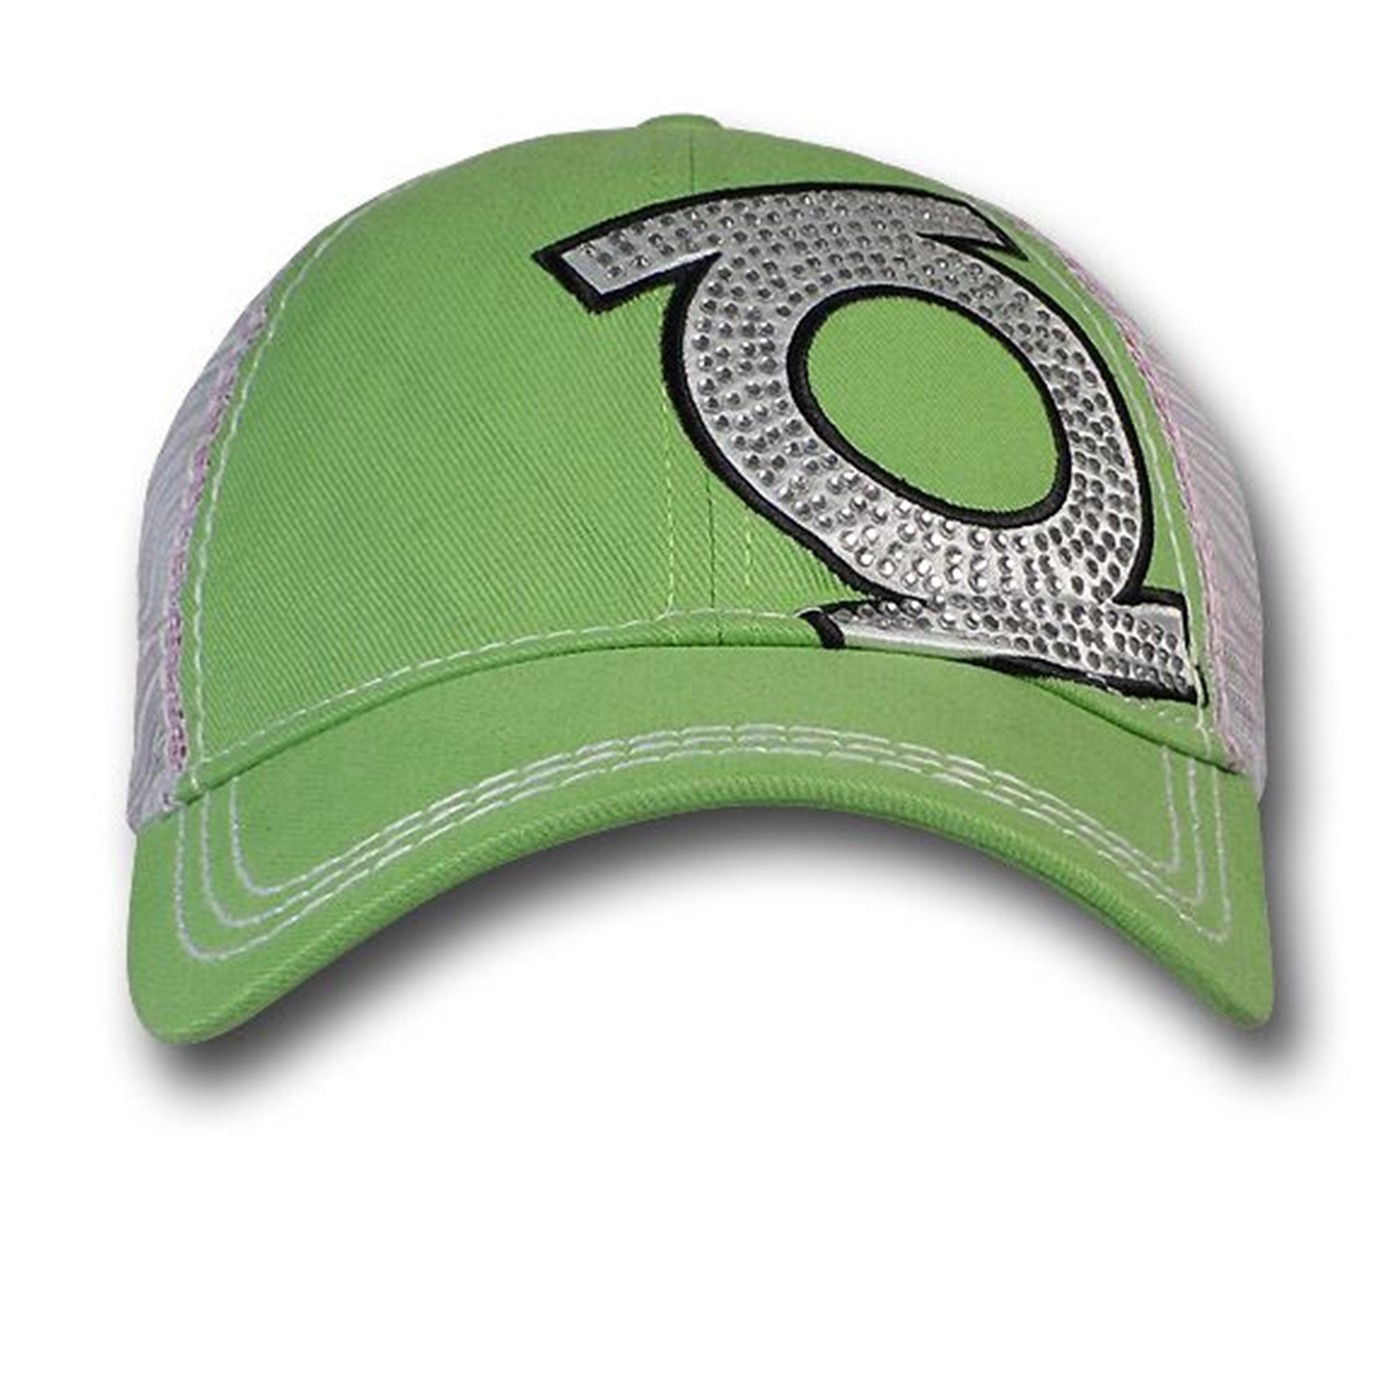 Green Lantern Skewed Rhinestone Symbol Baseball Cap